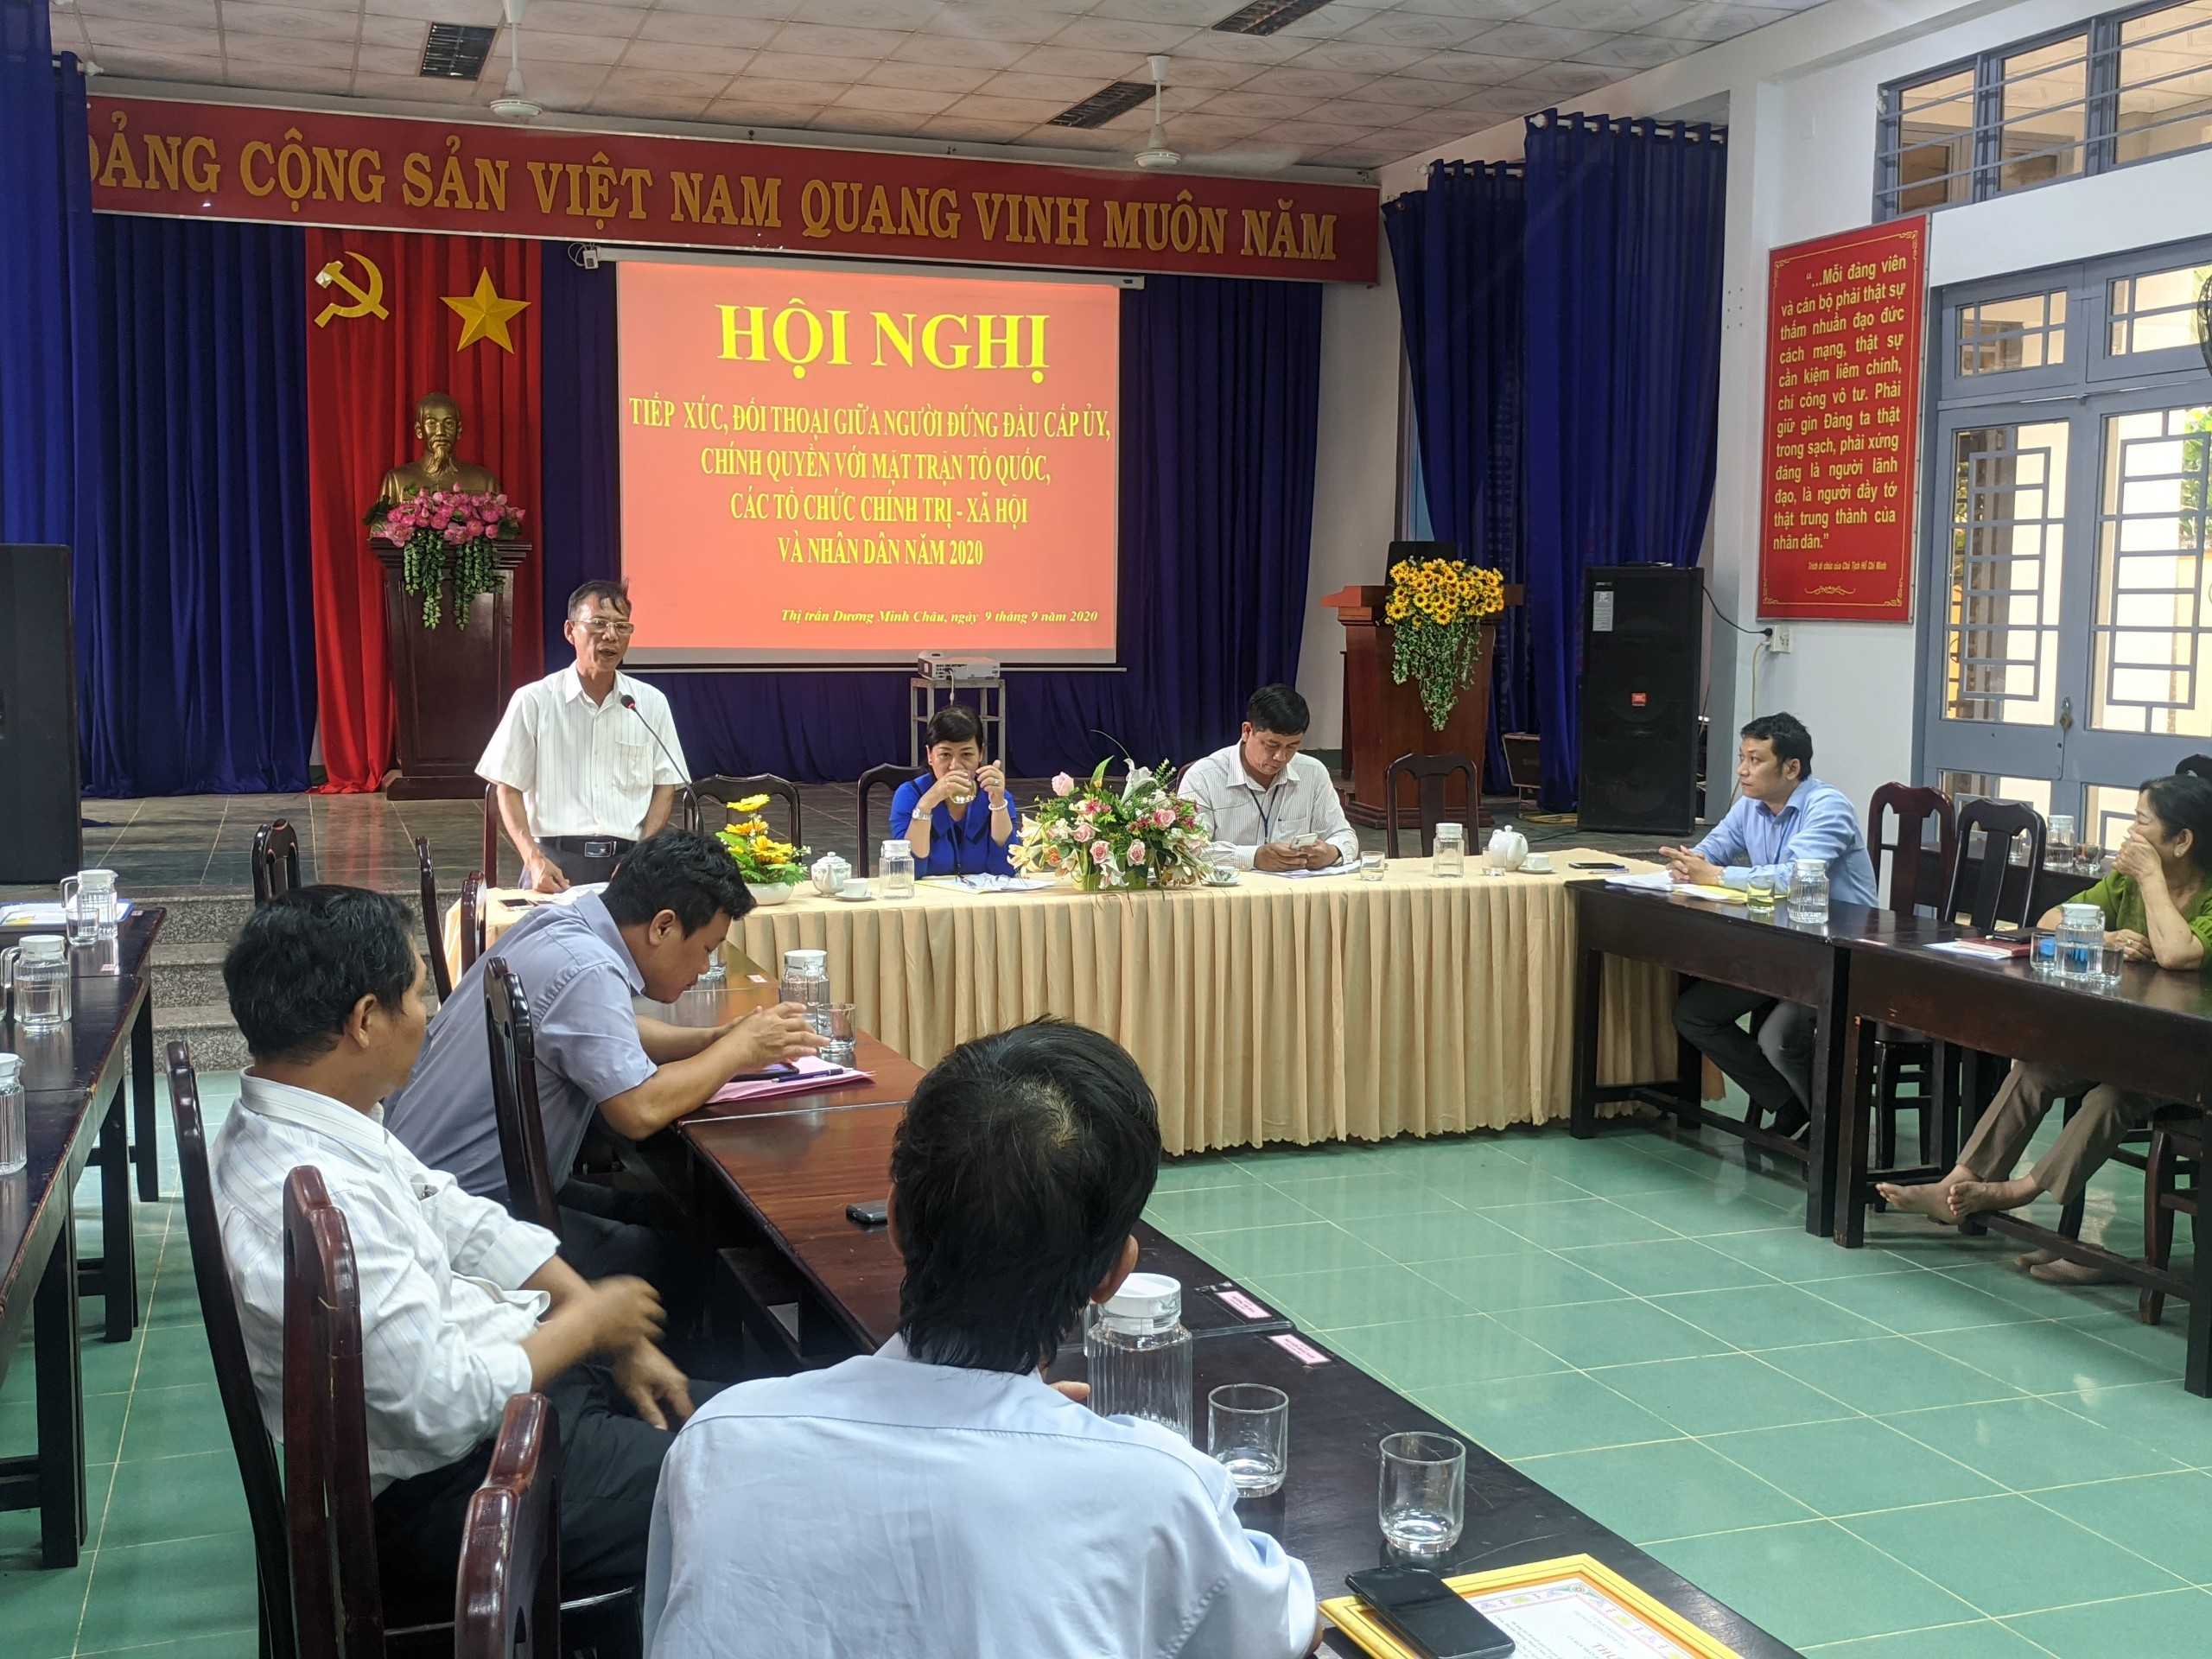 Thị trấn Dương Minh Châu tổ chức hội nghị tiếp xúc, đối thoại trực tiếp giữa người đứng đầu cấp ủy Đảng, chính quyền với Mặt trận Tổ quốc, các tổ chức chính trị-xã hội và Nhân dân